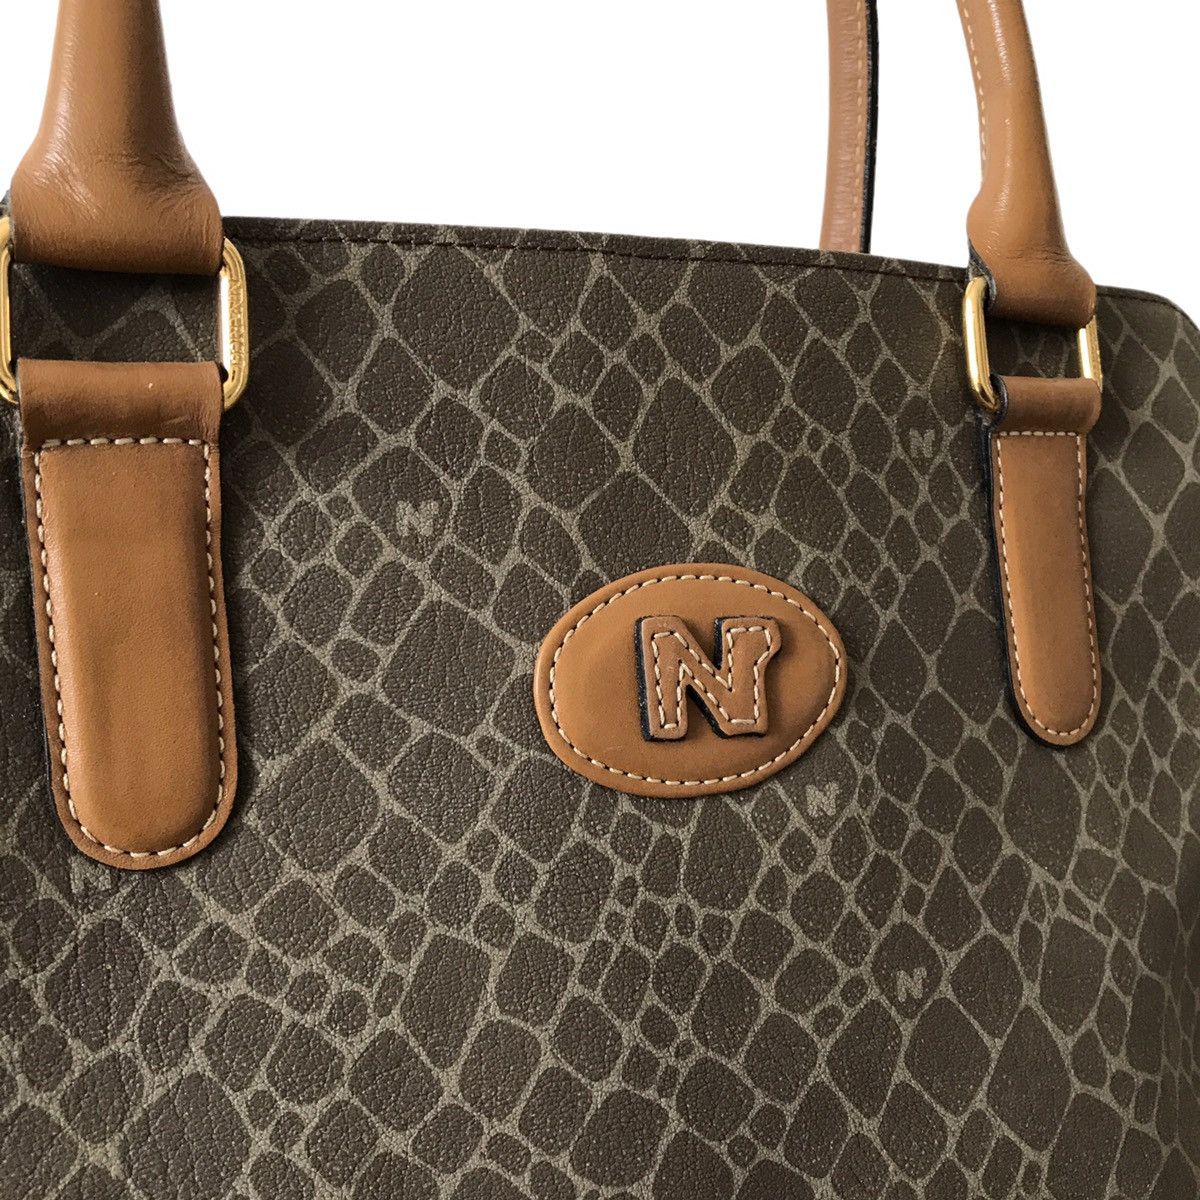 Vintage Authentic Vintage Nina Ricci Paris Leather Handheld Bag Size ONE SIZE - 3 Thumbnail